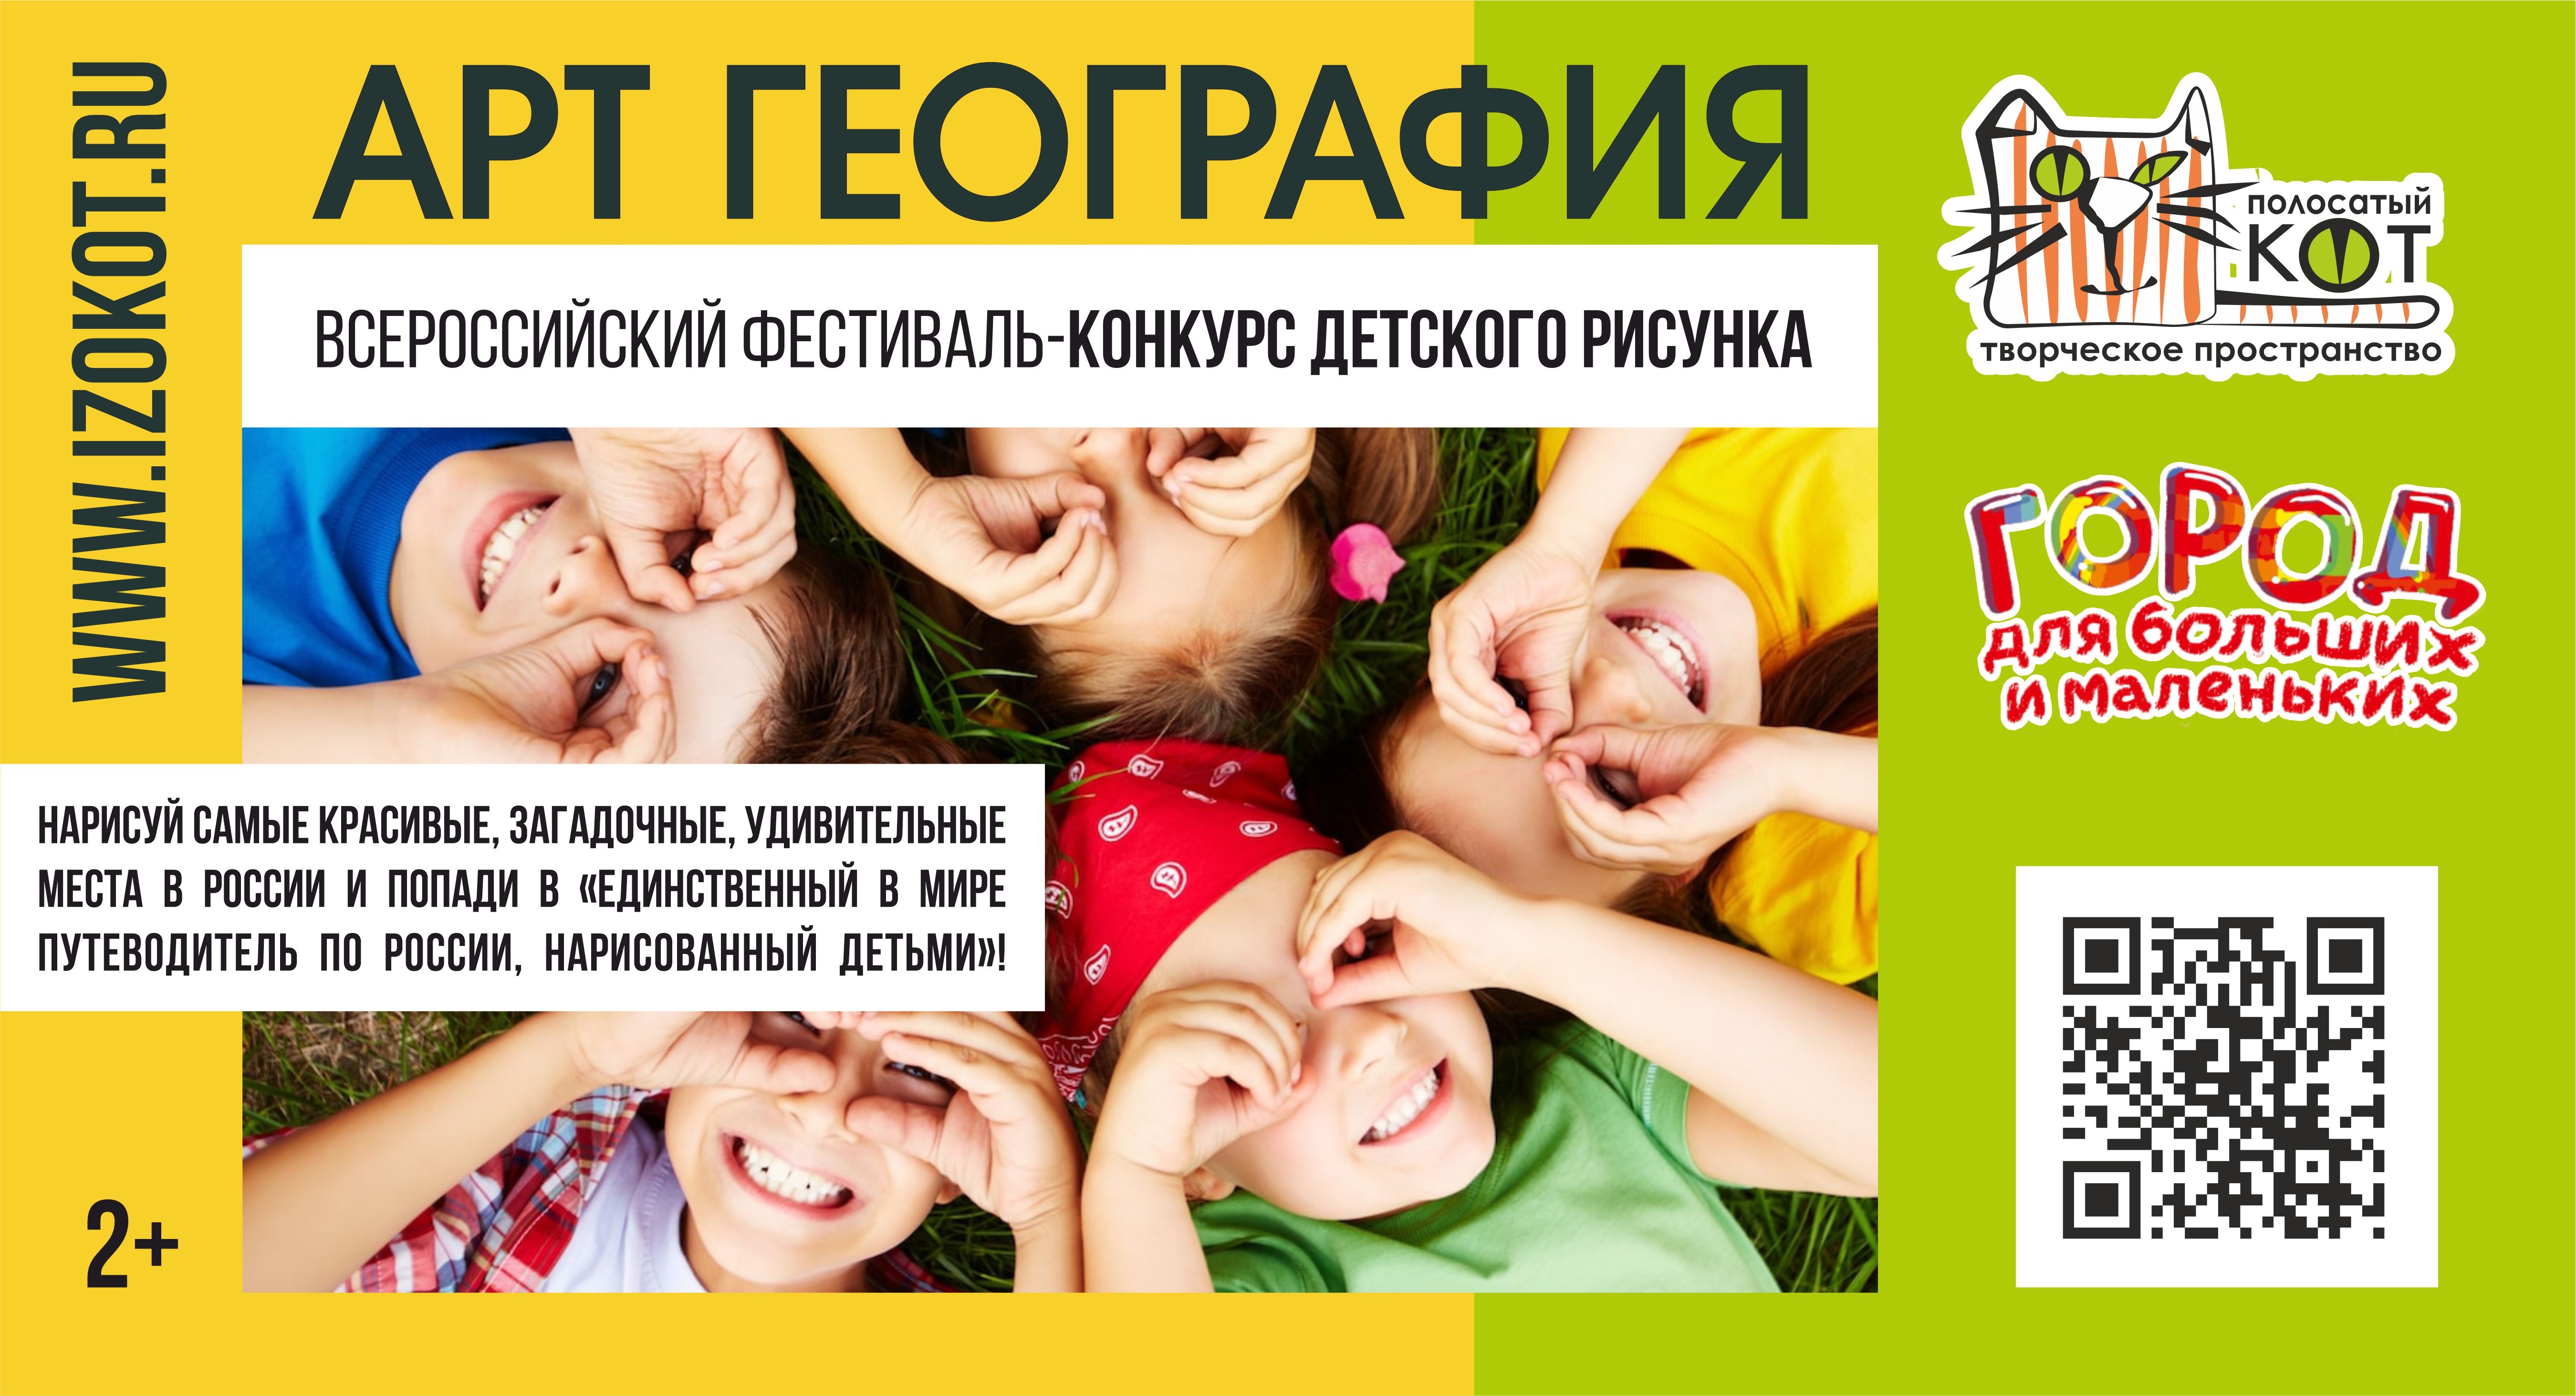 Всероссийский фестиваль-конкурс детского и юношеского творчества «Город для больших и маленьких»